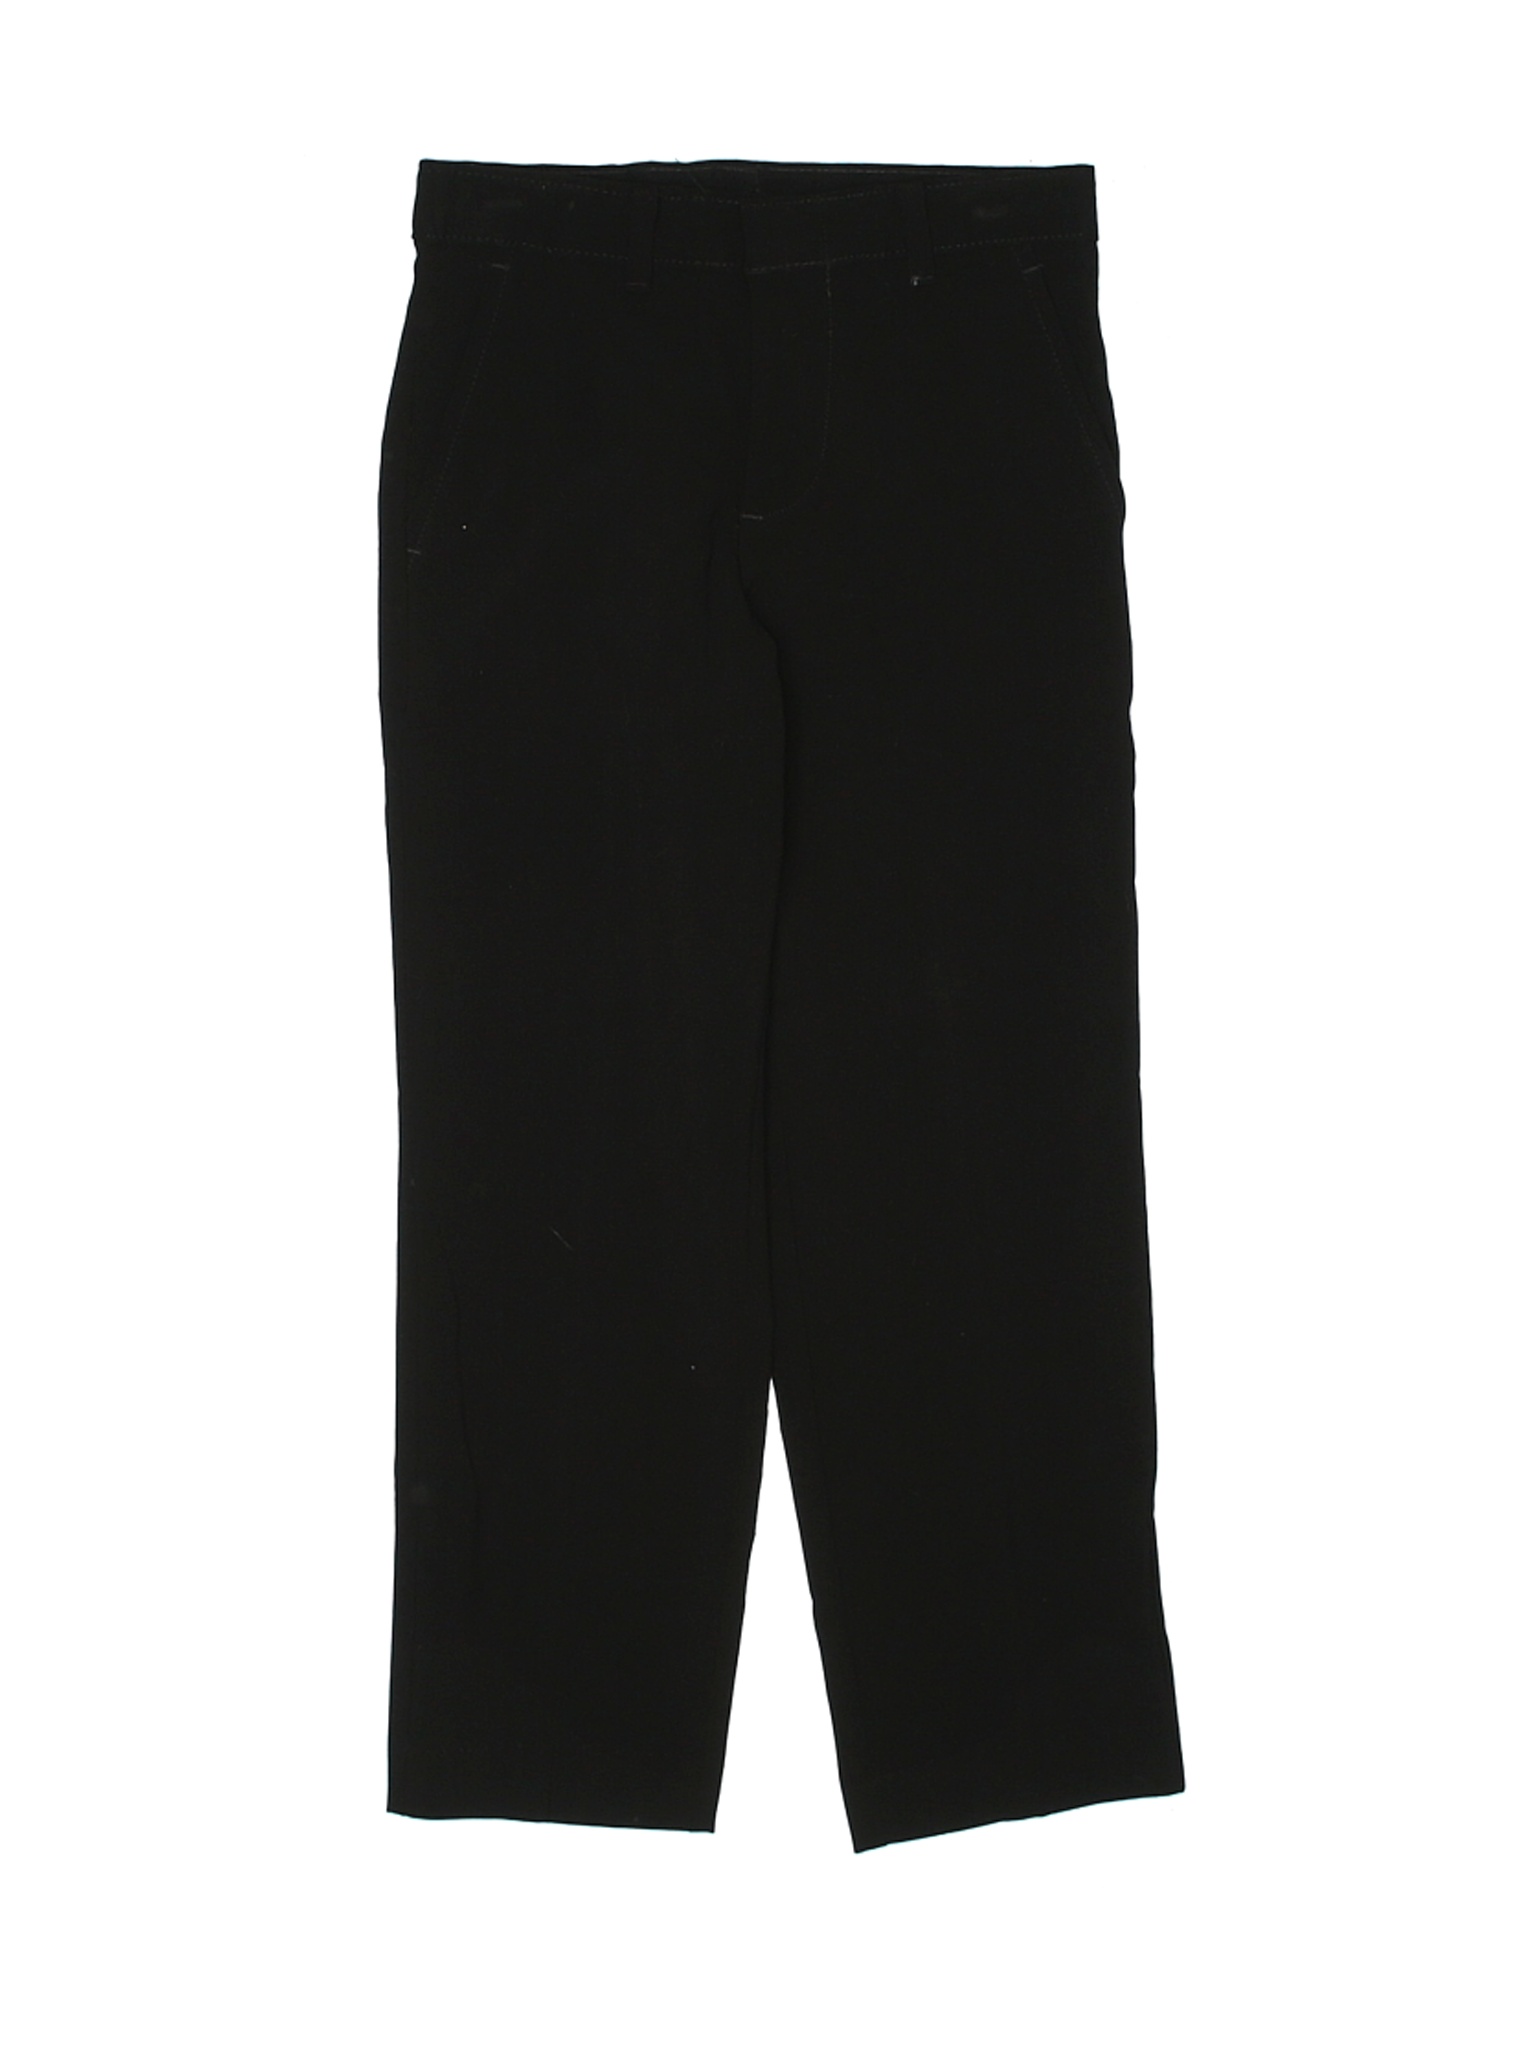 Chaps Boys Black Dress Pants 6 | eBay